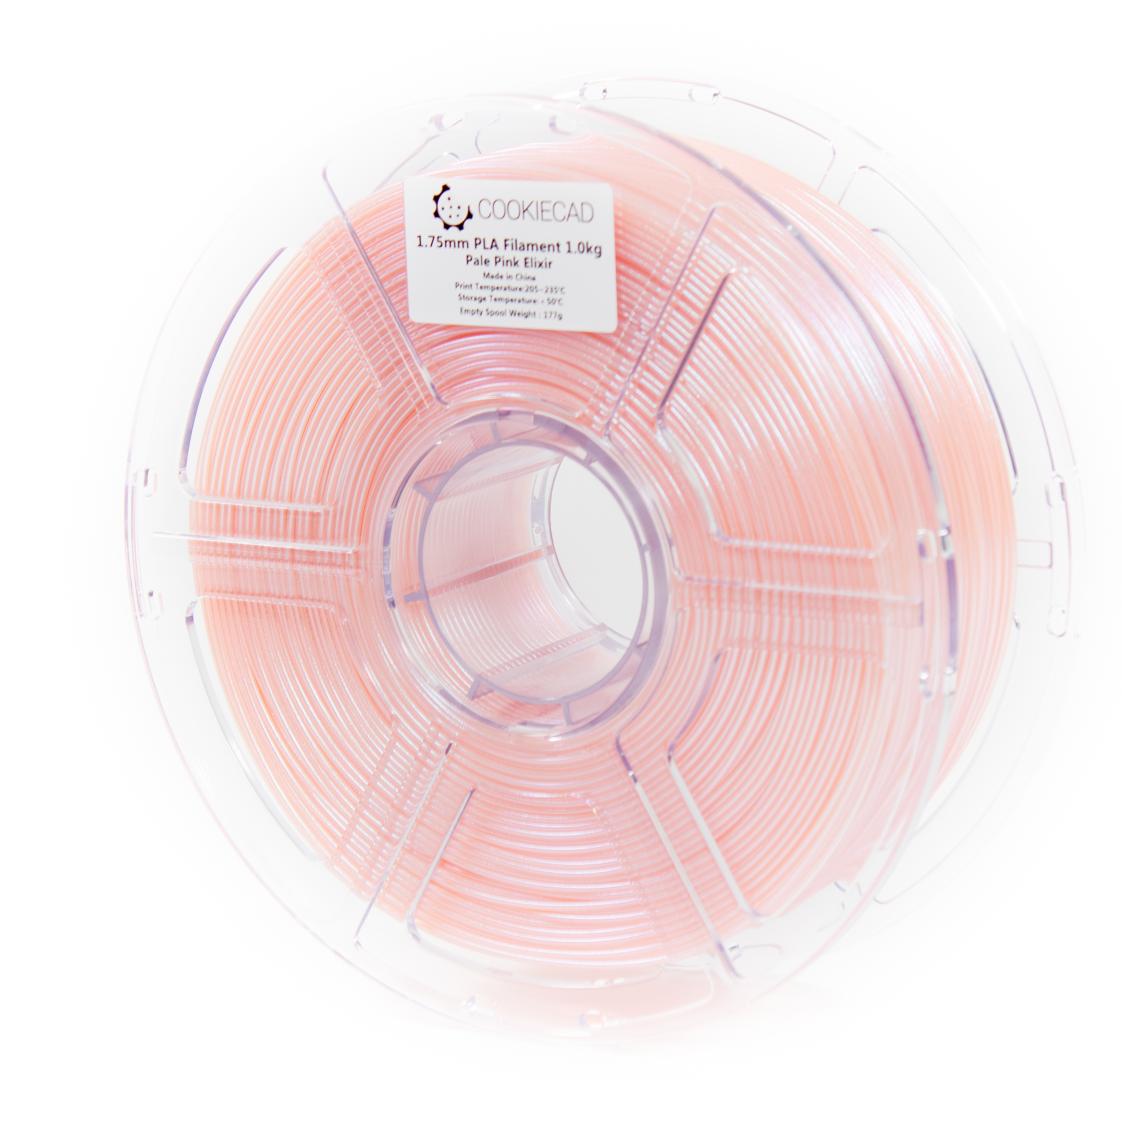 Pale Pink Elixir PLA Filament 1.75mm, 1kg